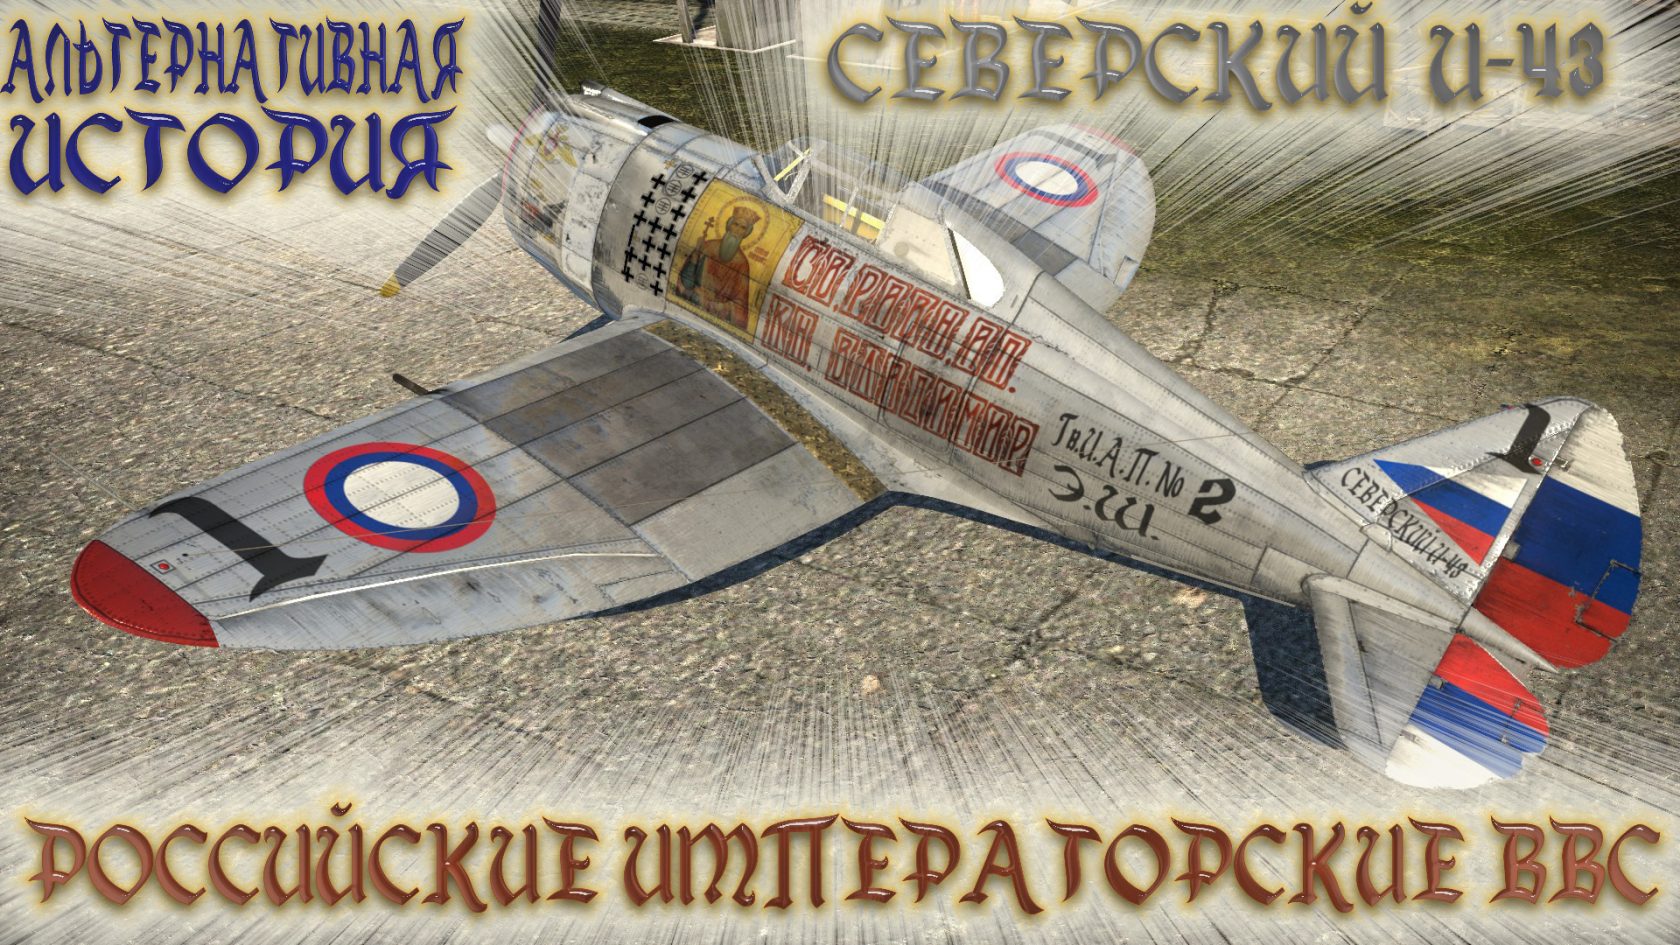 Российские Императорские ВВС. Мир, в котором не было революции 1917 года